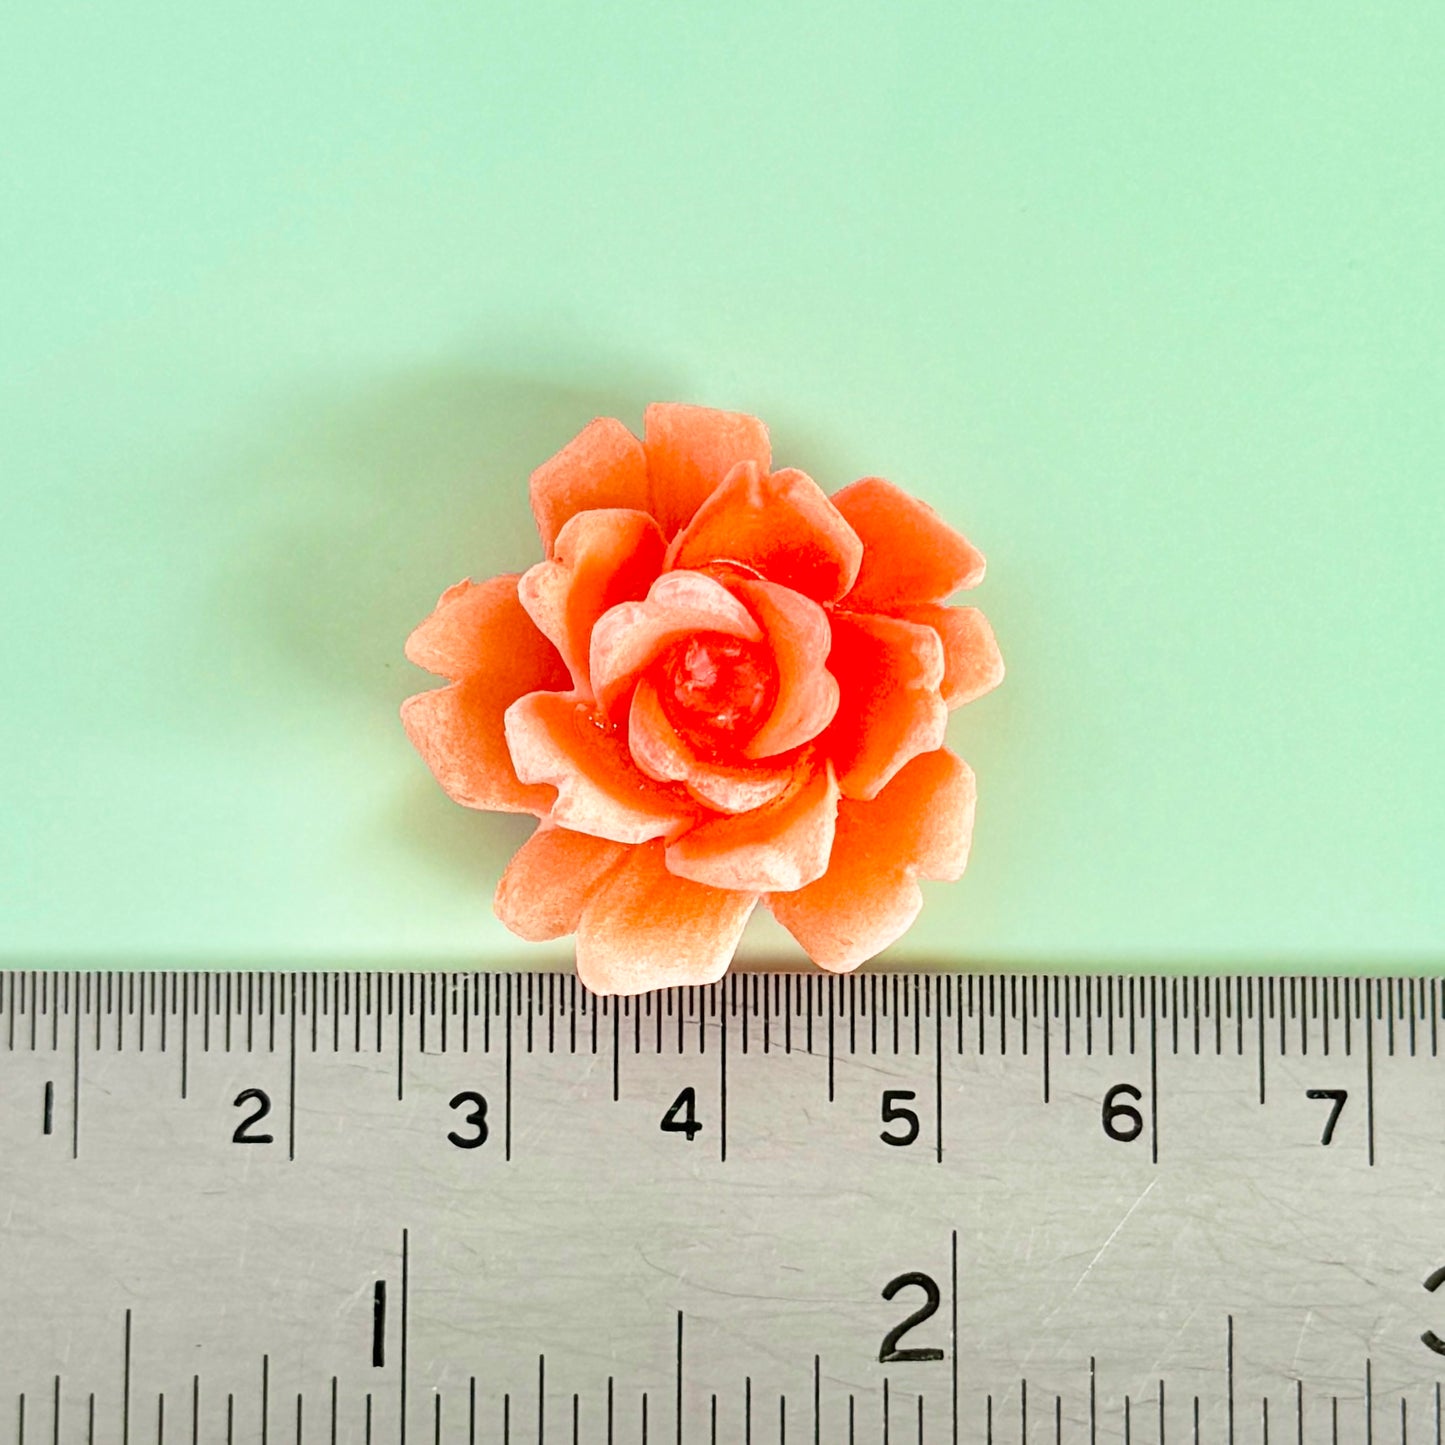 W.Germany Vintage Plastic Flower Rose 28mm【Orange / Blue 】